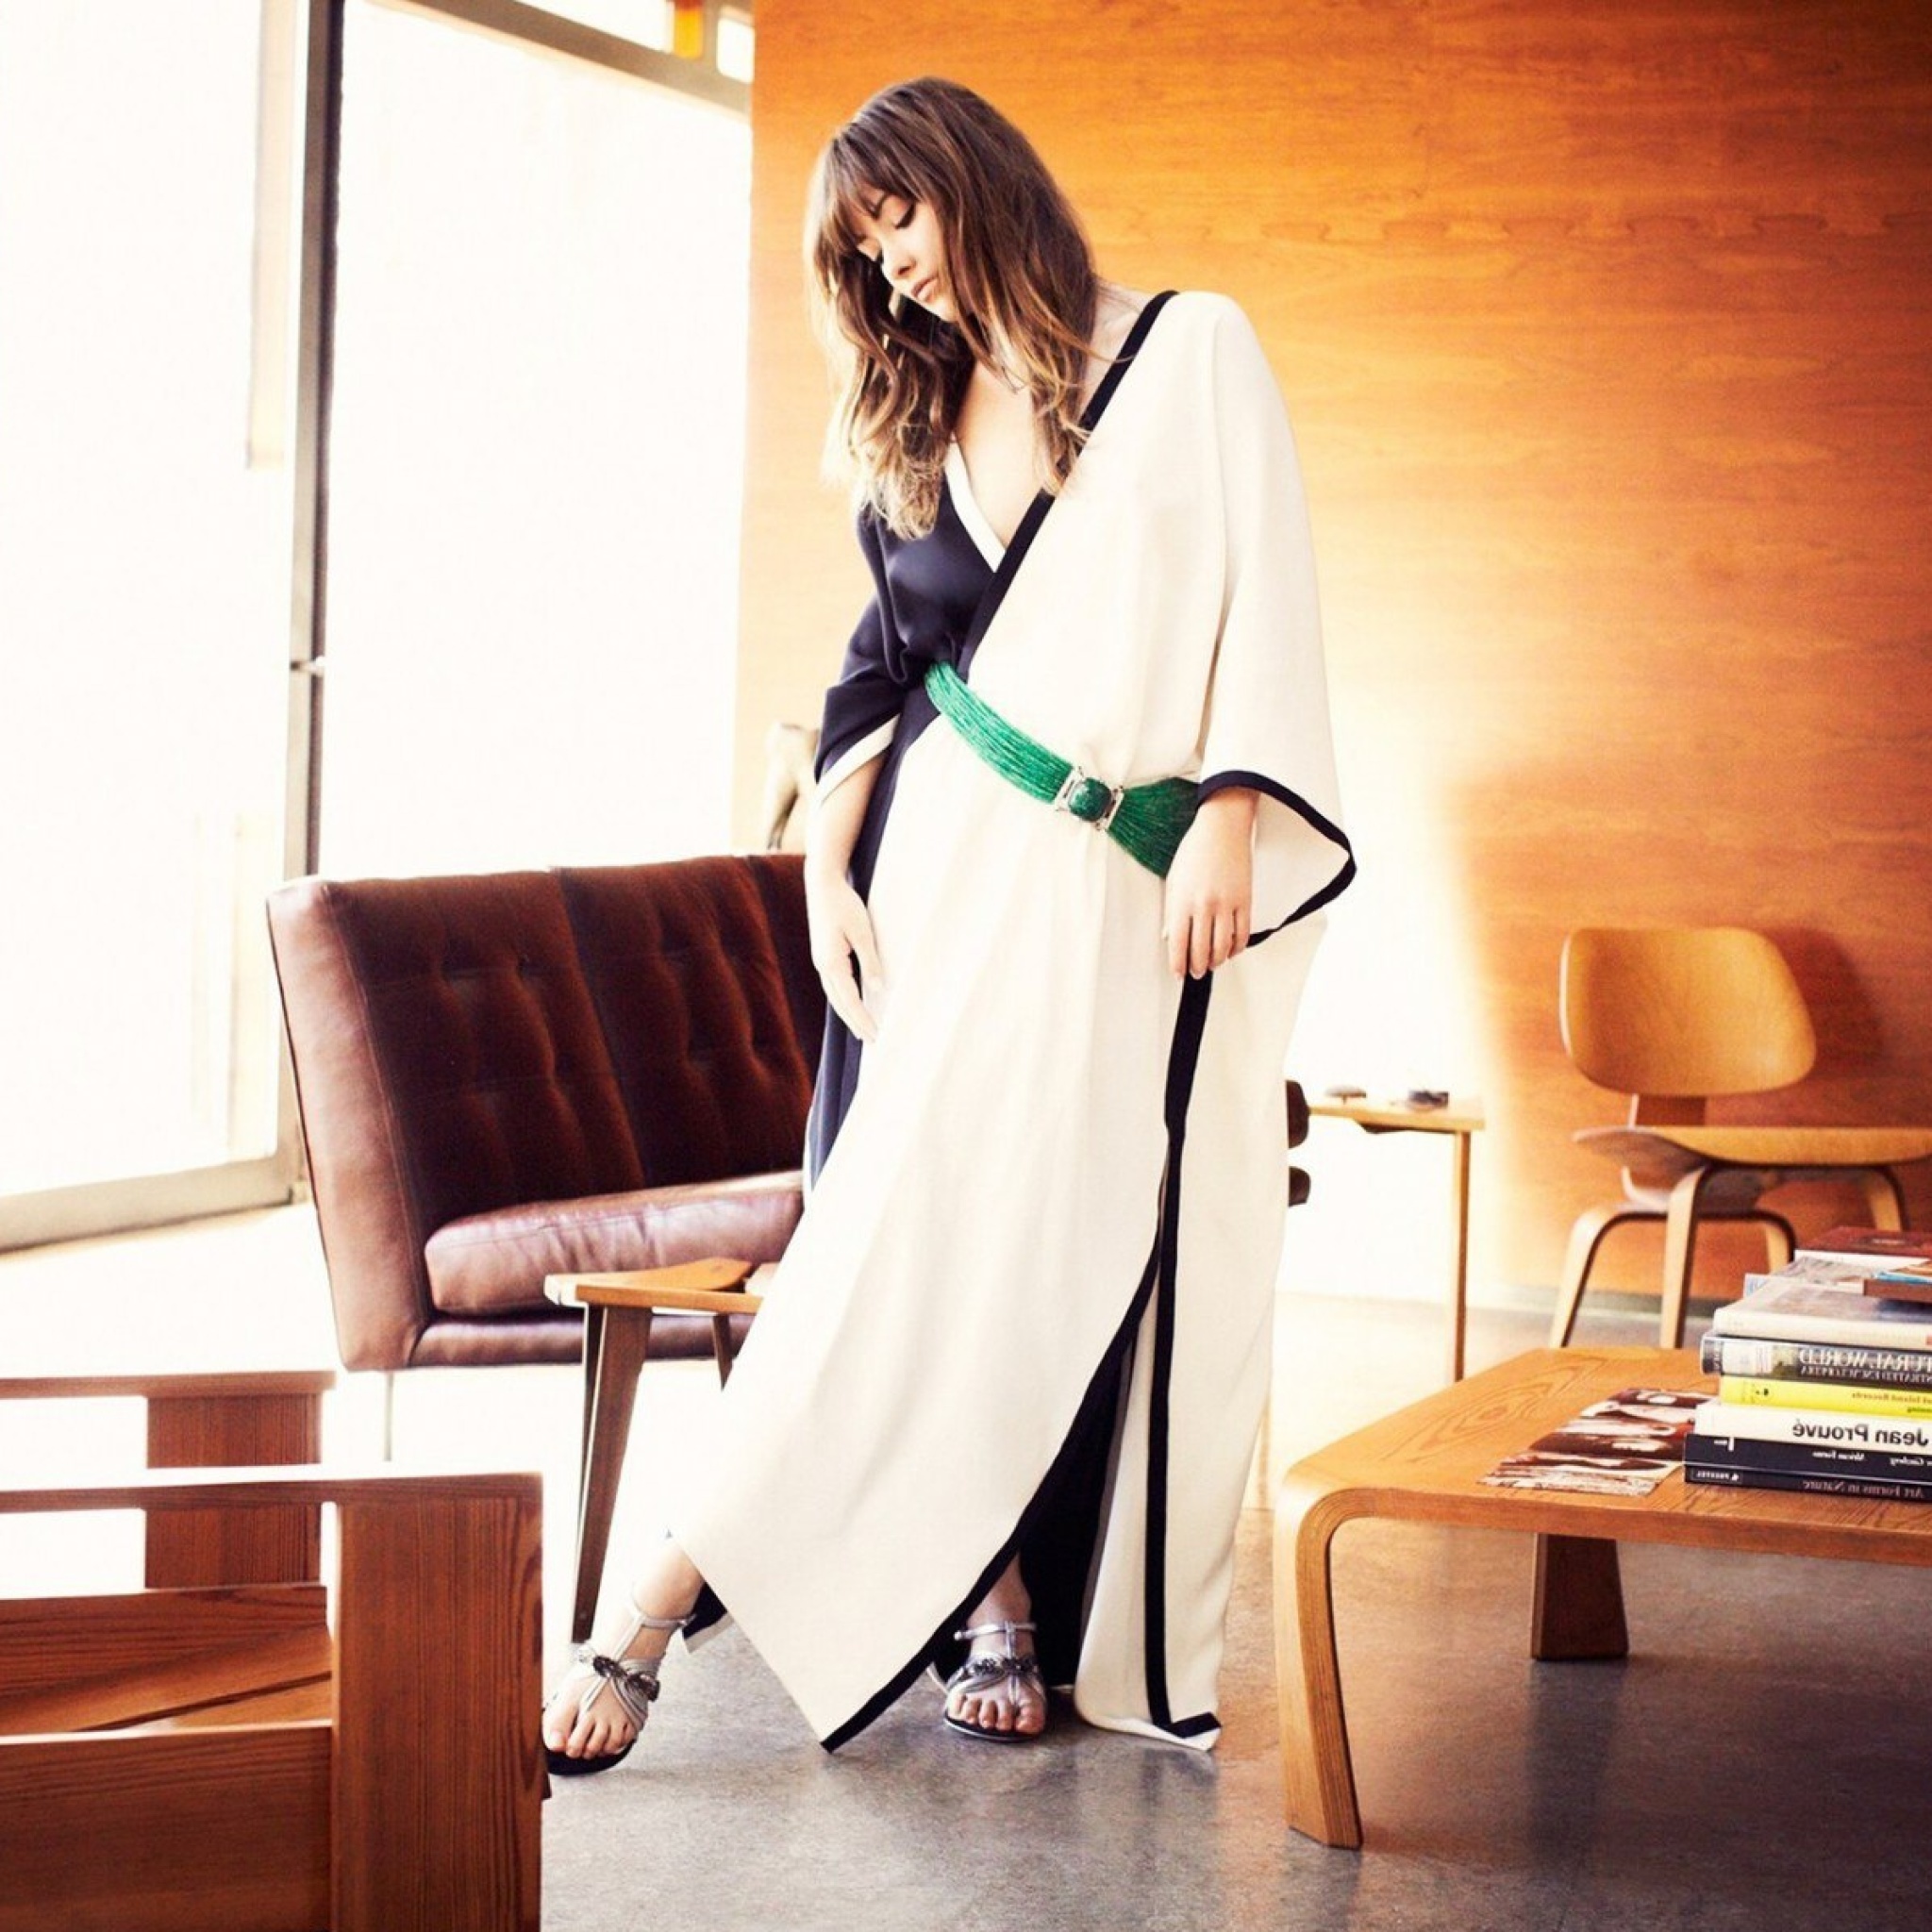 Das Olivia Wilde in Kimono Wallpaper 2048x2048